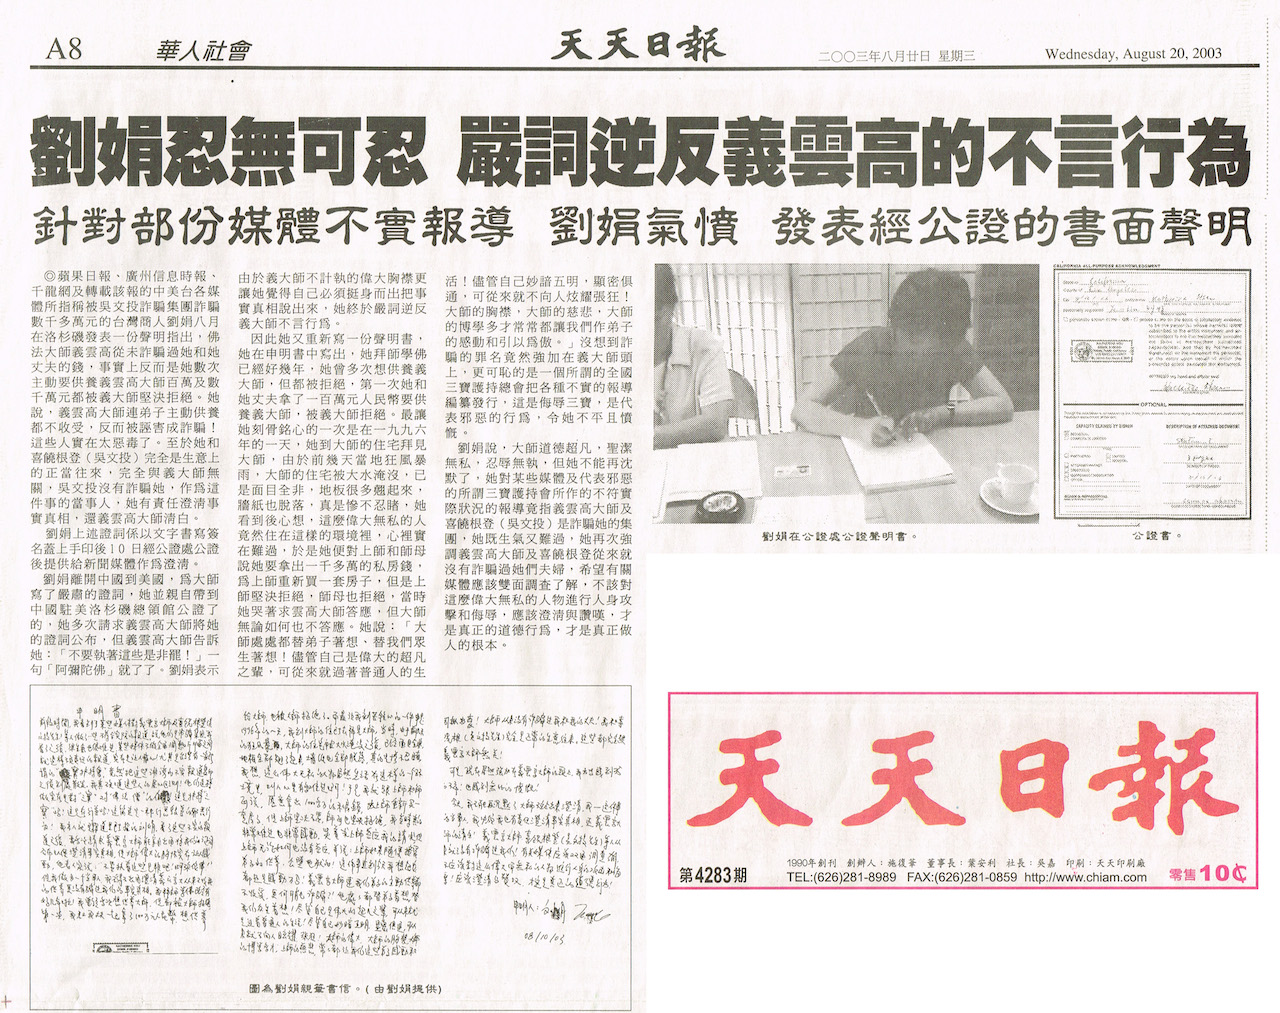 劉娟於2003年8月20日在《天天日報》上發表書面聲明